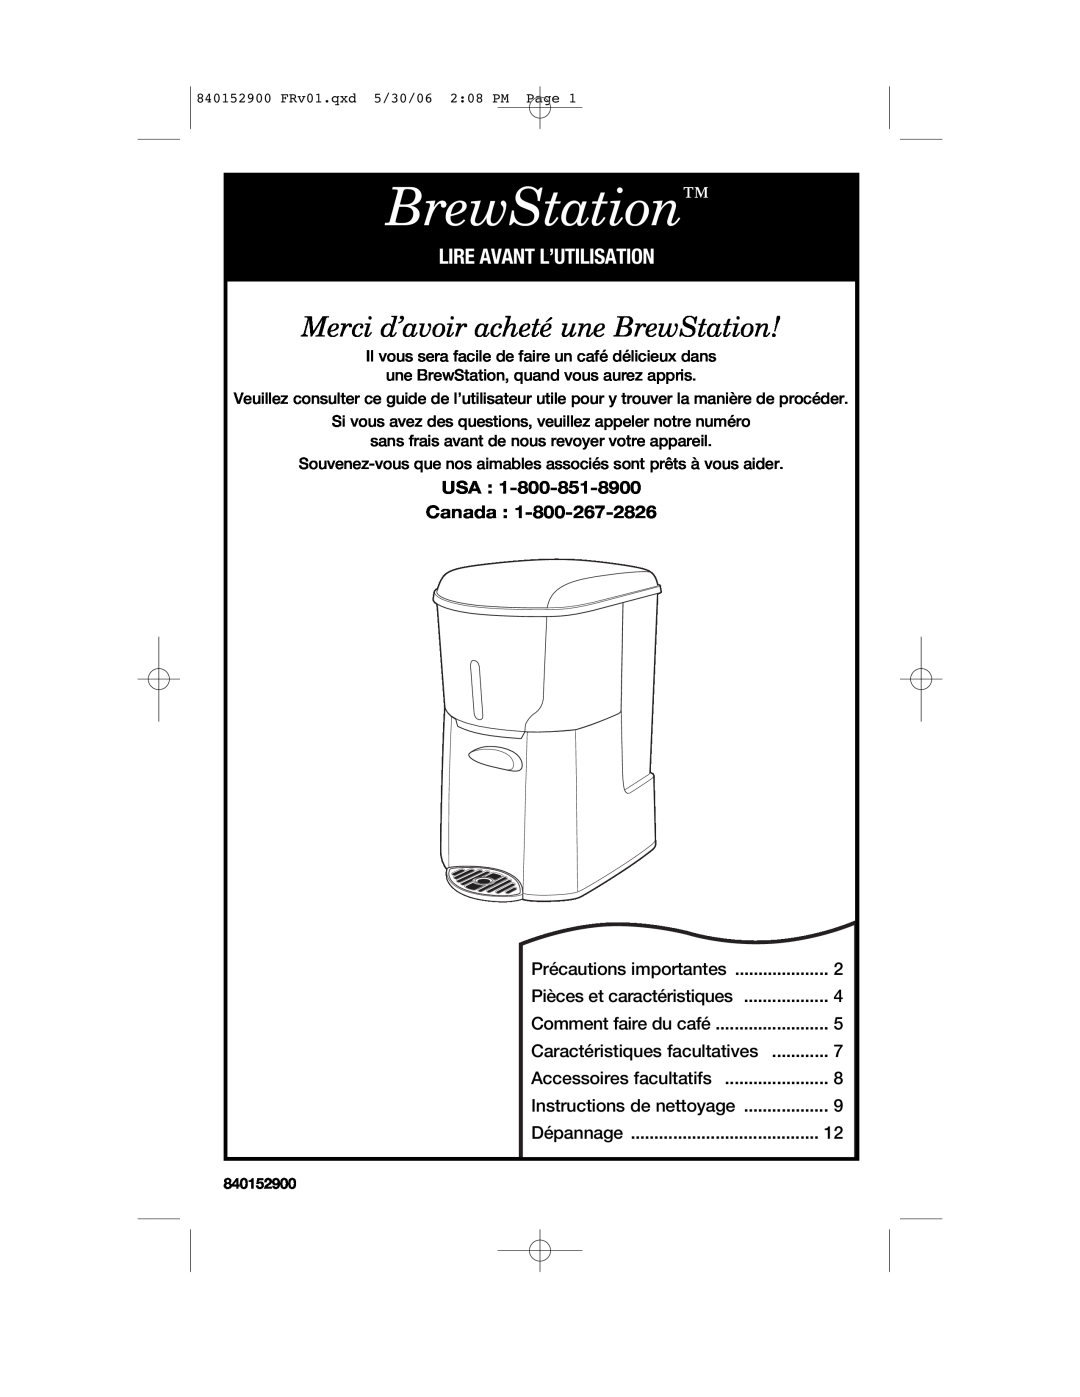 Hamilton Beach 47535C manual Merci d’avoir acheté une BrewStation, Lire Avant L’Utilisation, USA Canada 